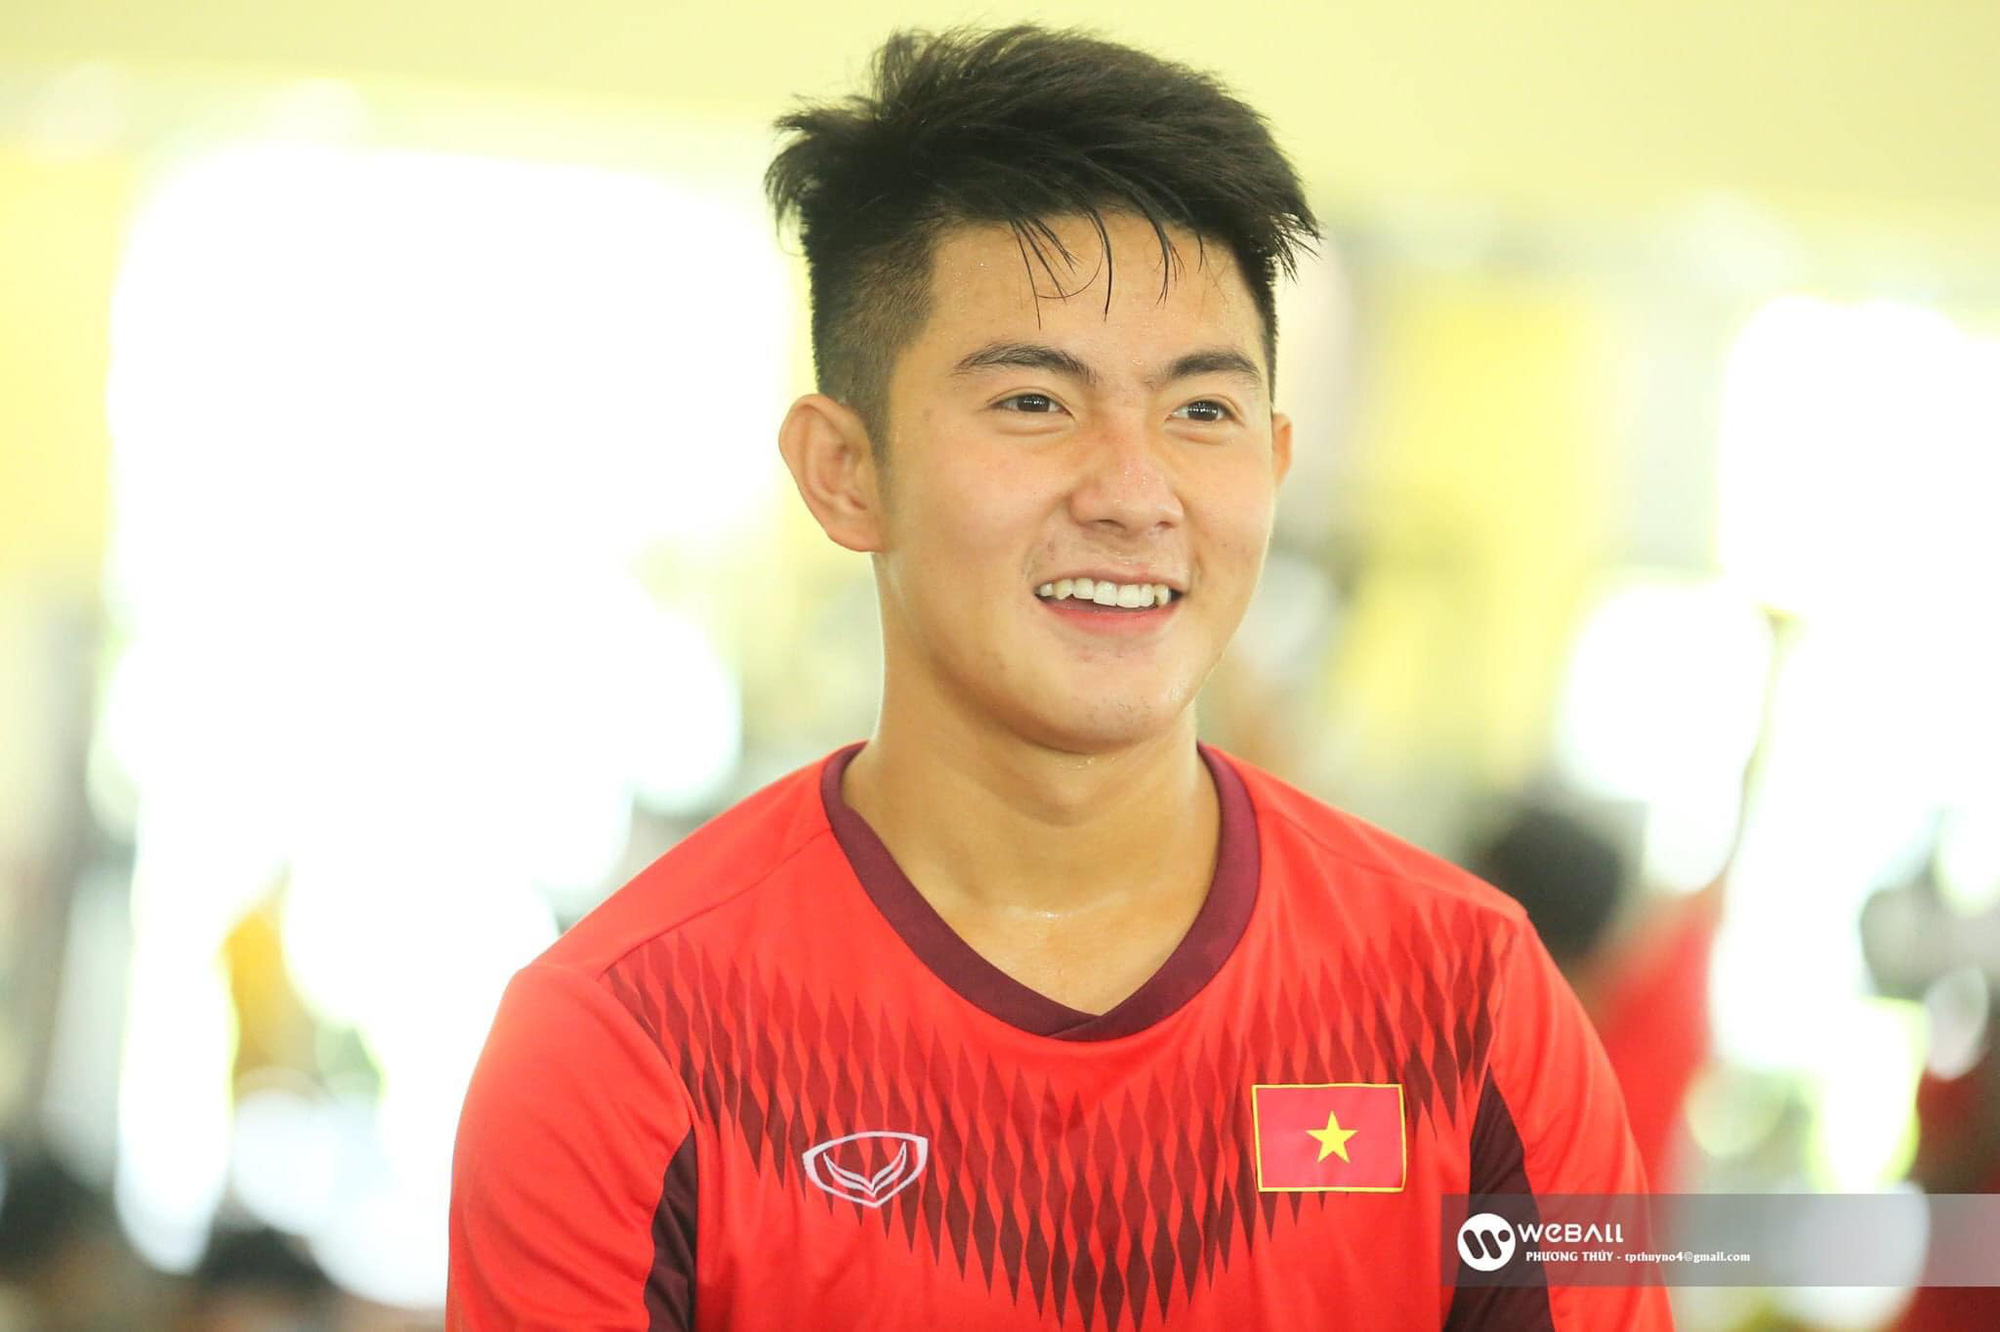 Visual mới của U23 Việt Nam đang đại náo TikTok: Hotboy sinh năm 2k1, cười cái là lịm tim - Ảnh 4.